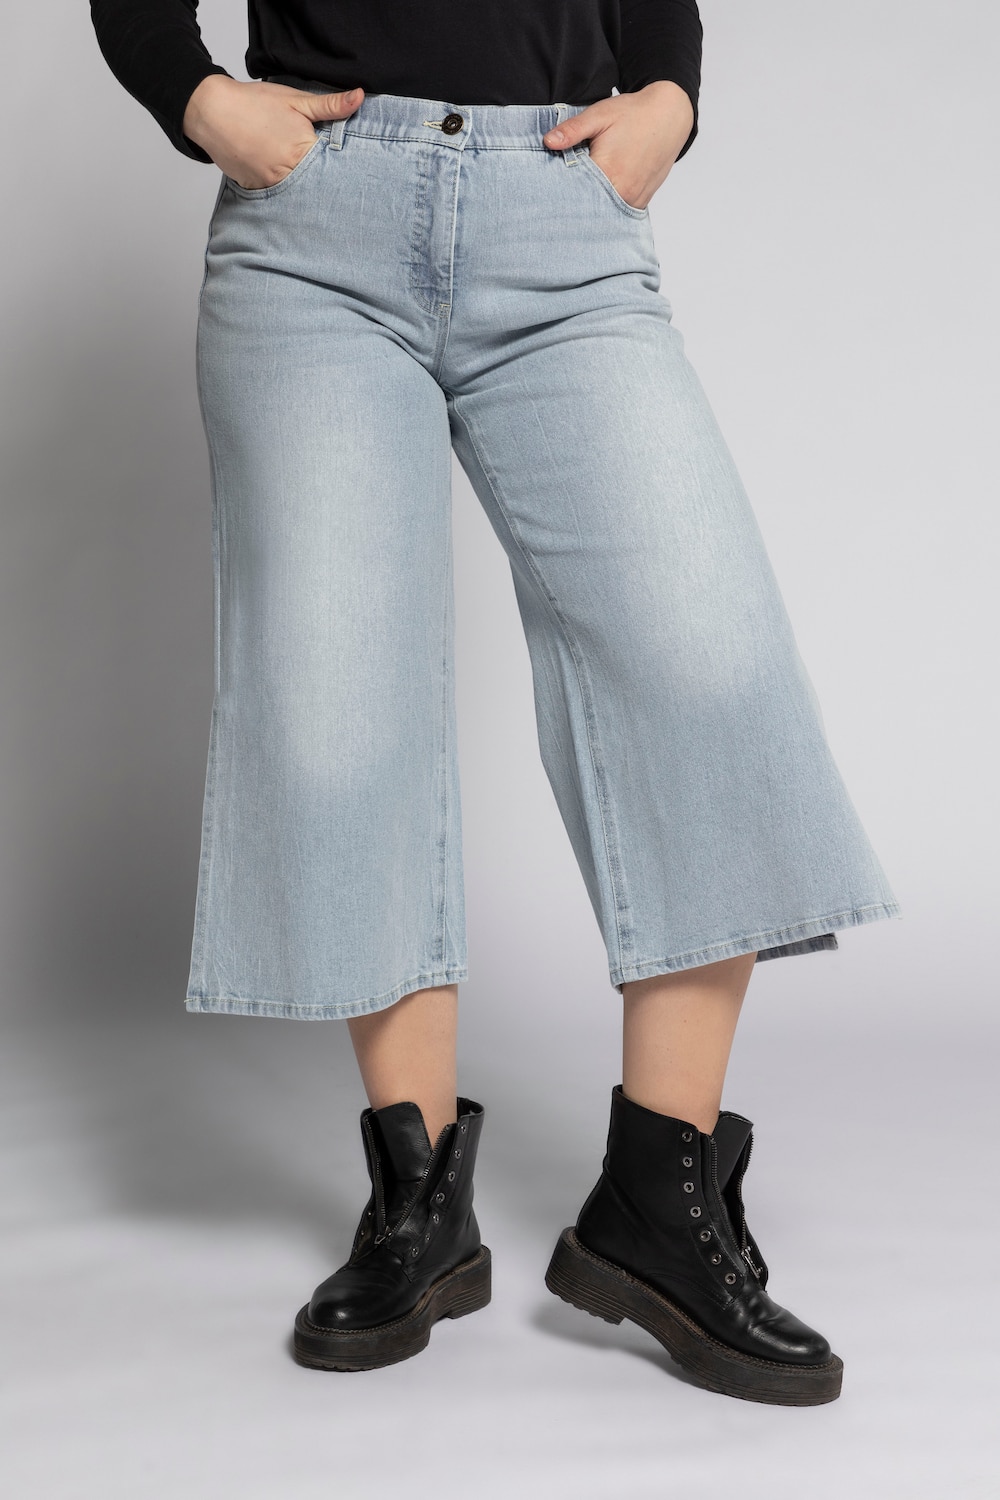 Grote Maten jeans culotte, Dames, blauw, Maat: 54, Katoen, Studio Untold